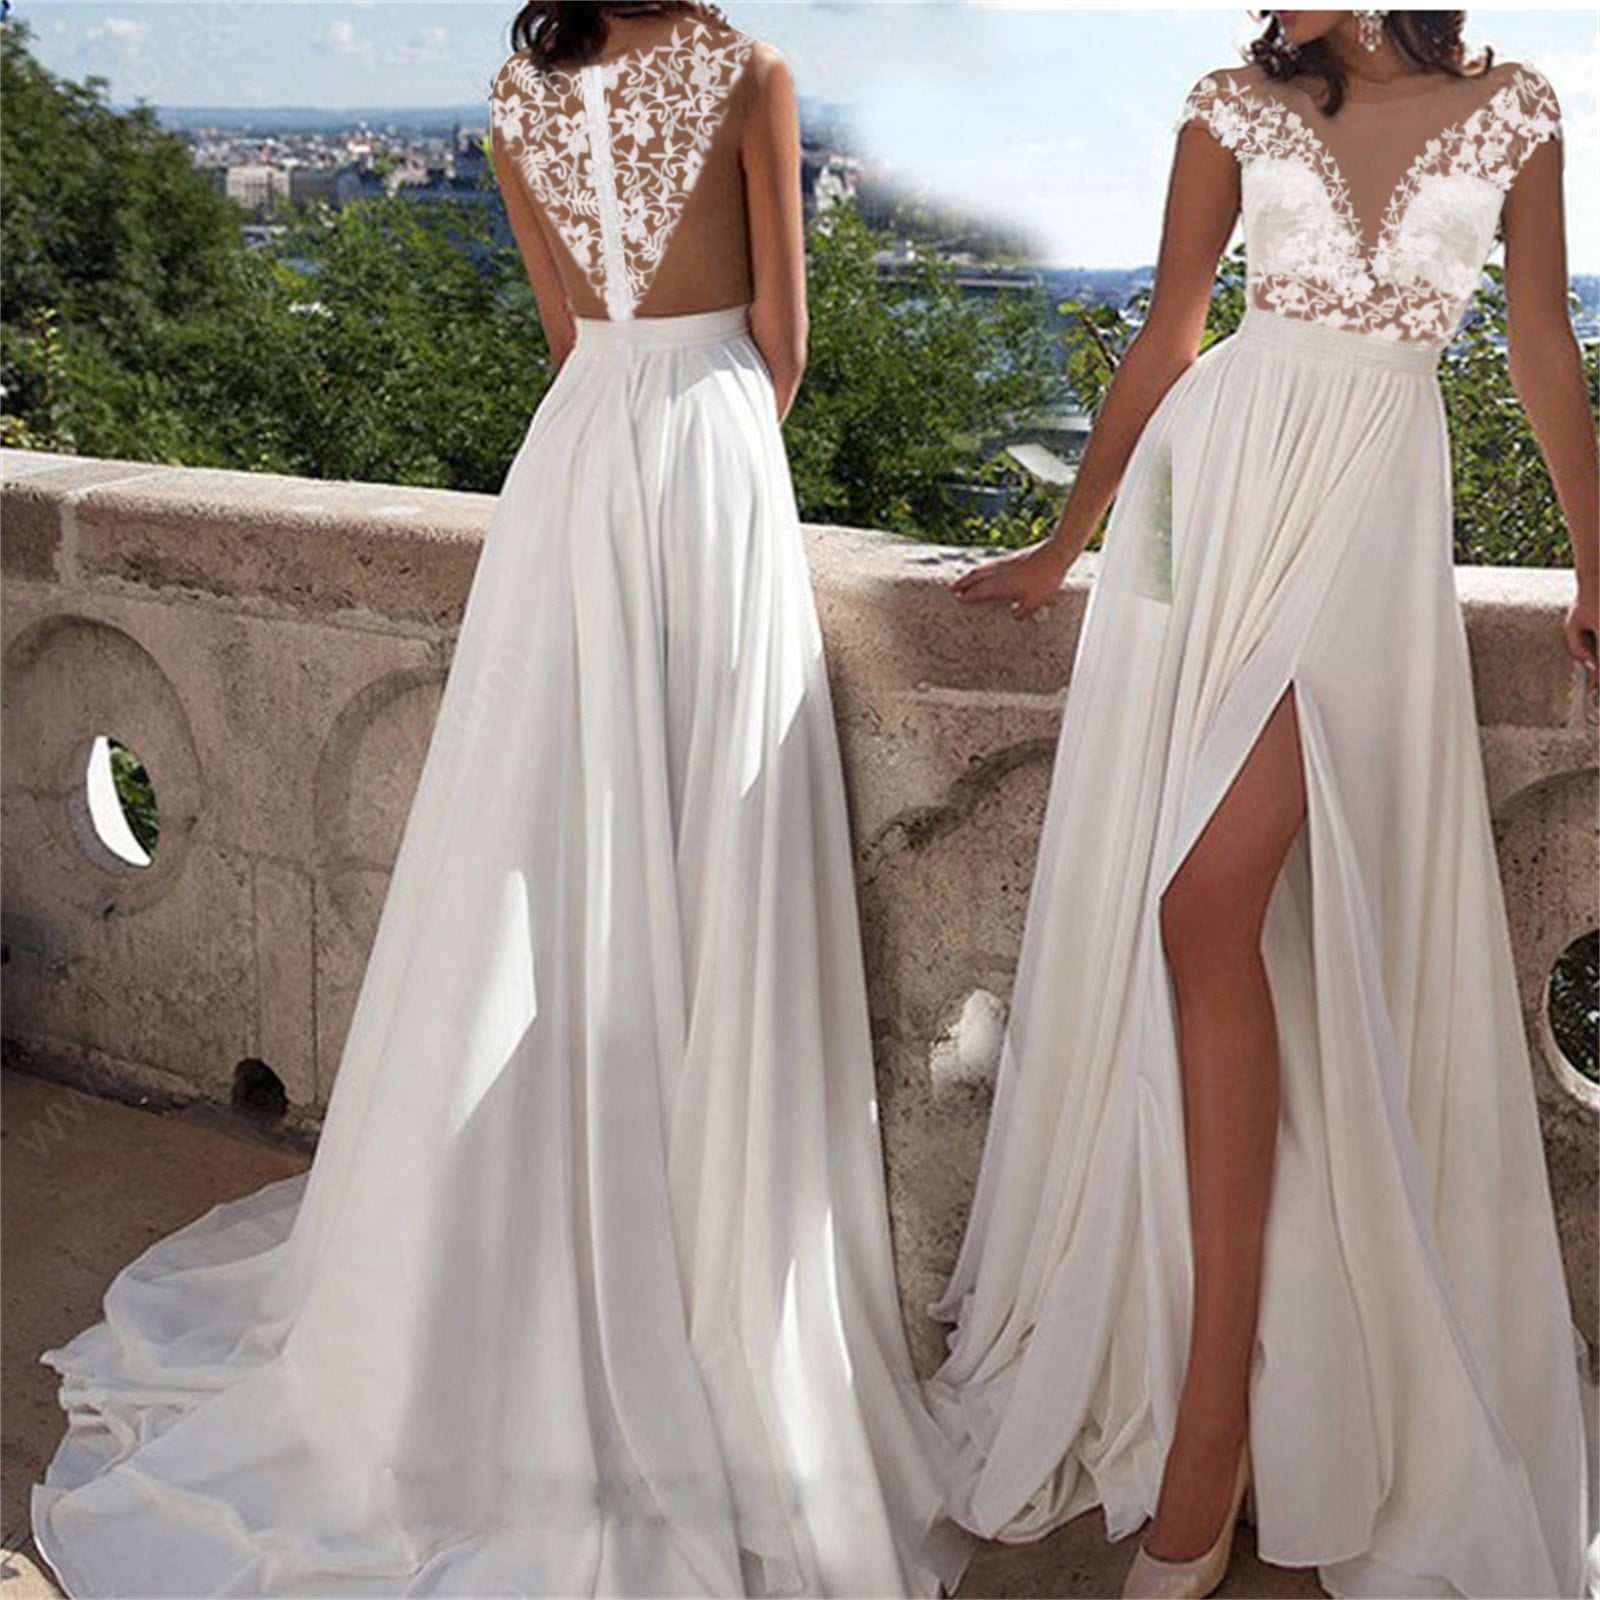 Summer Wedding Dress Lace V-Neck Evening Gown Beach Skirt Summer for Women Size Maxi Casual White - Walmart.com